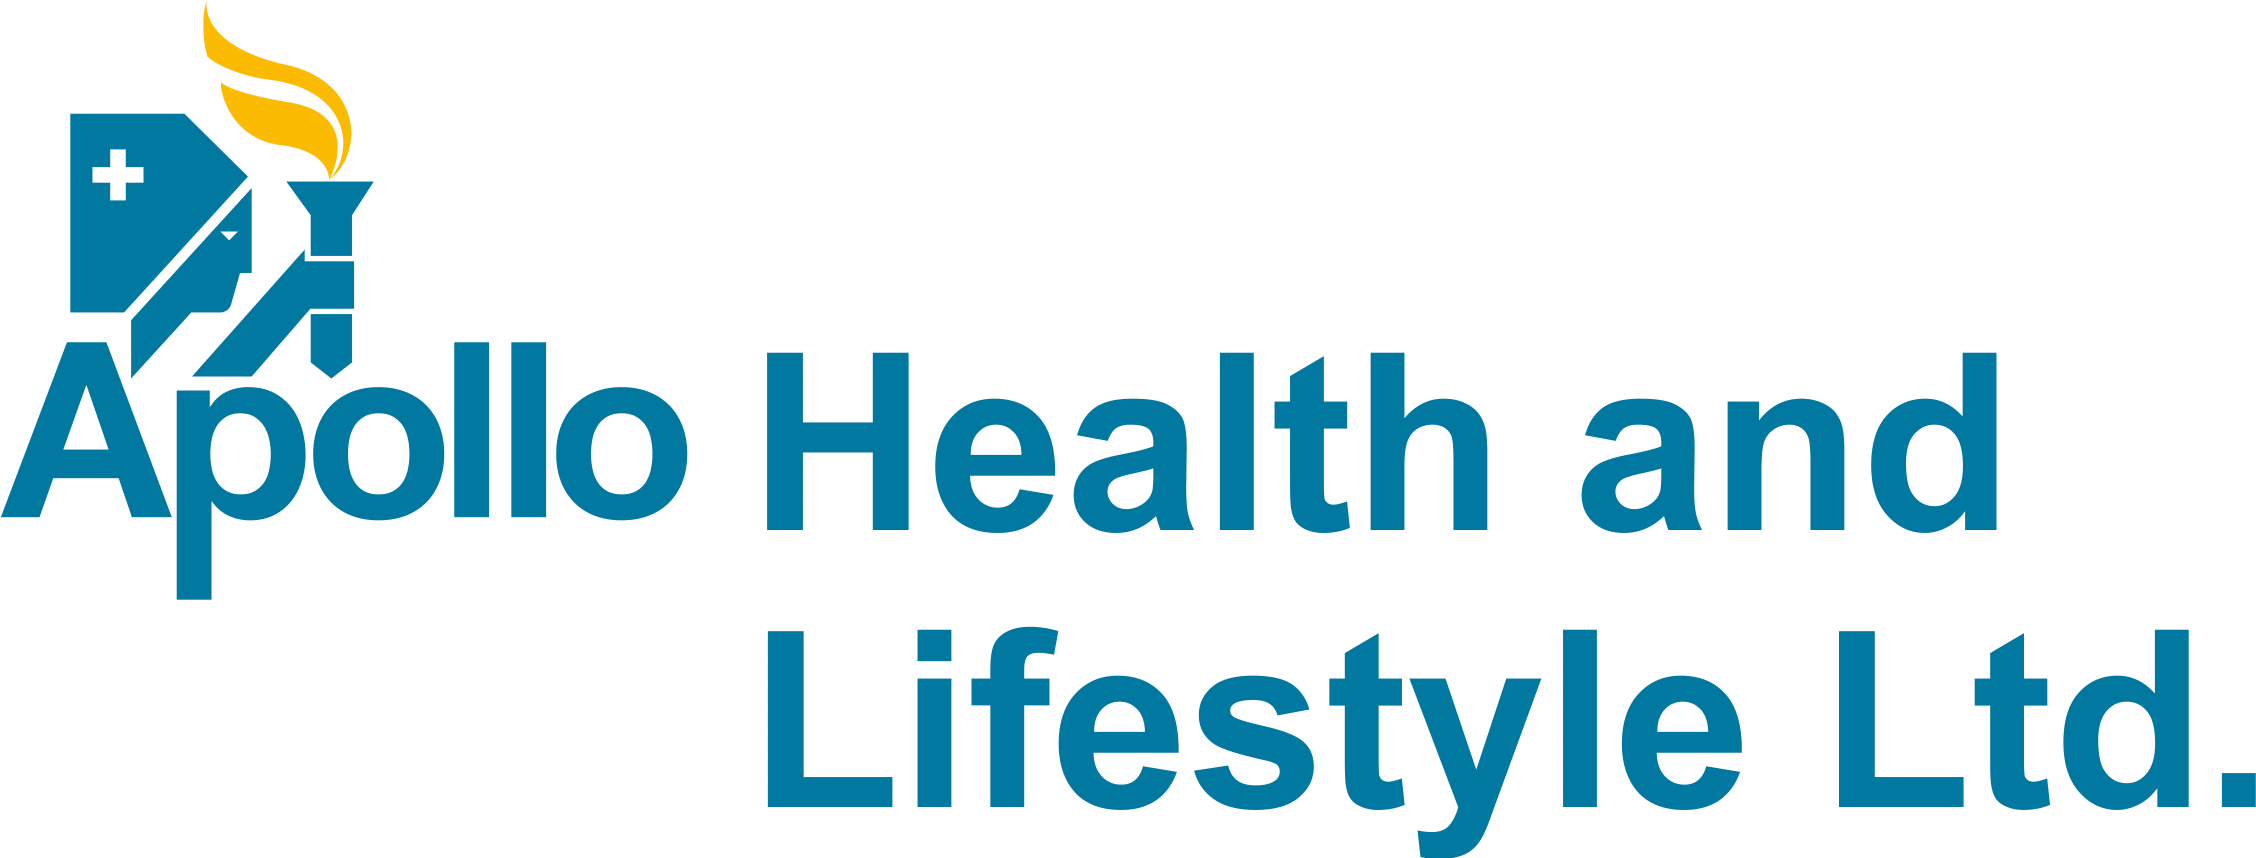 Apollo Health and Lifestyle Ltd. logo